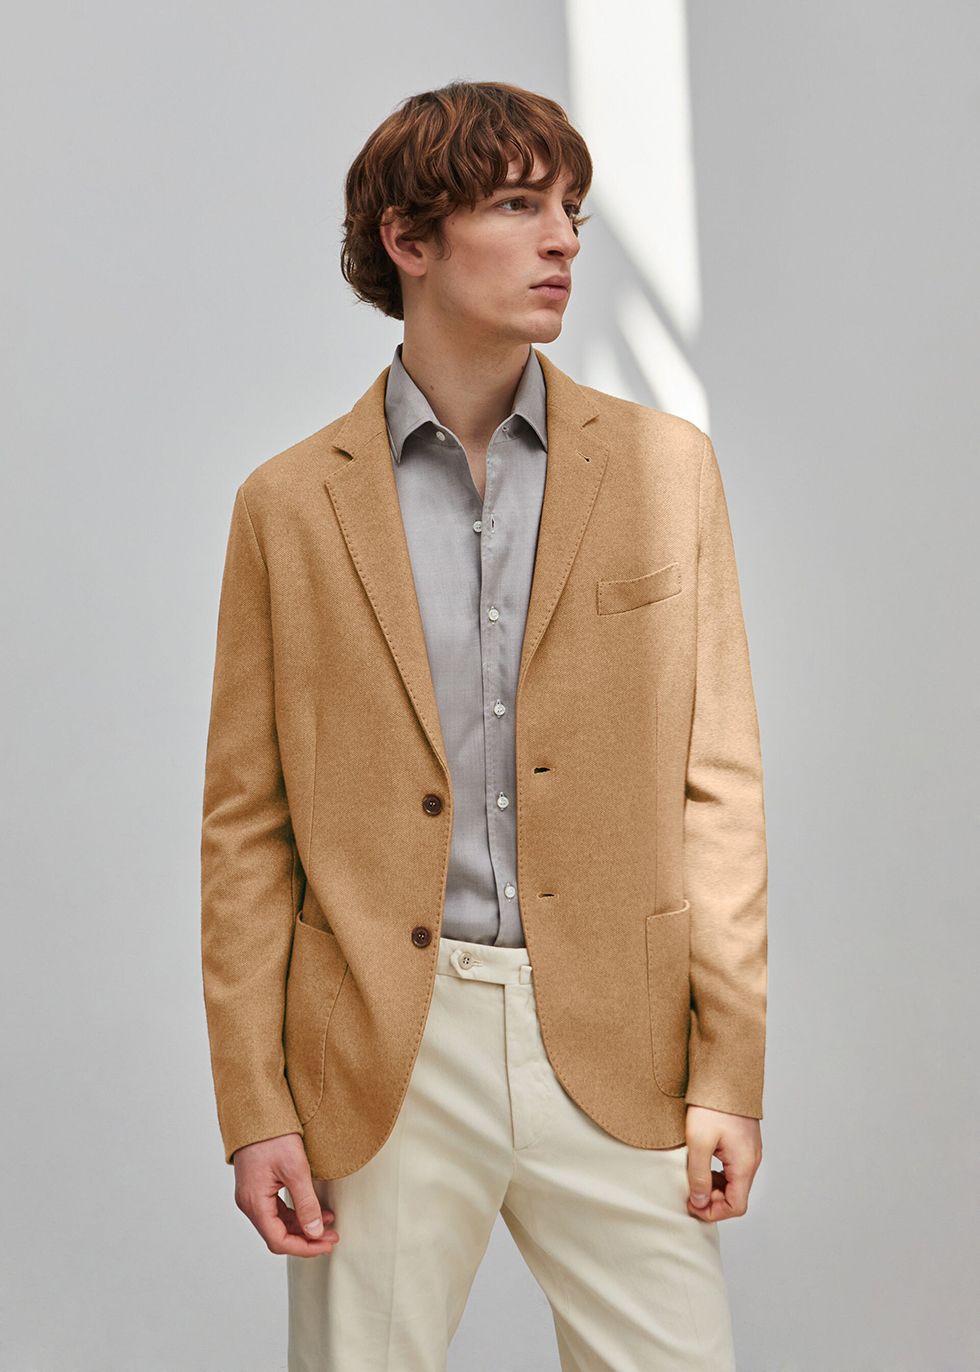 giacca uomo elegante giacche uomo eleganti blazer uomo uomo giacca